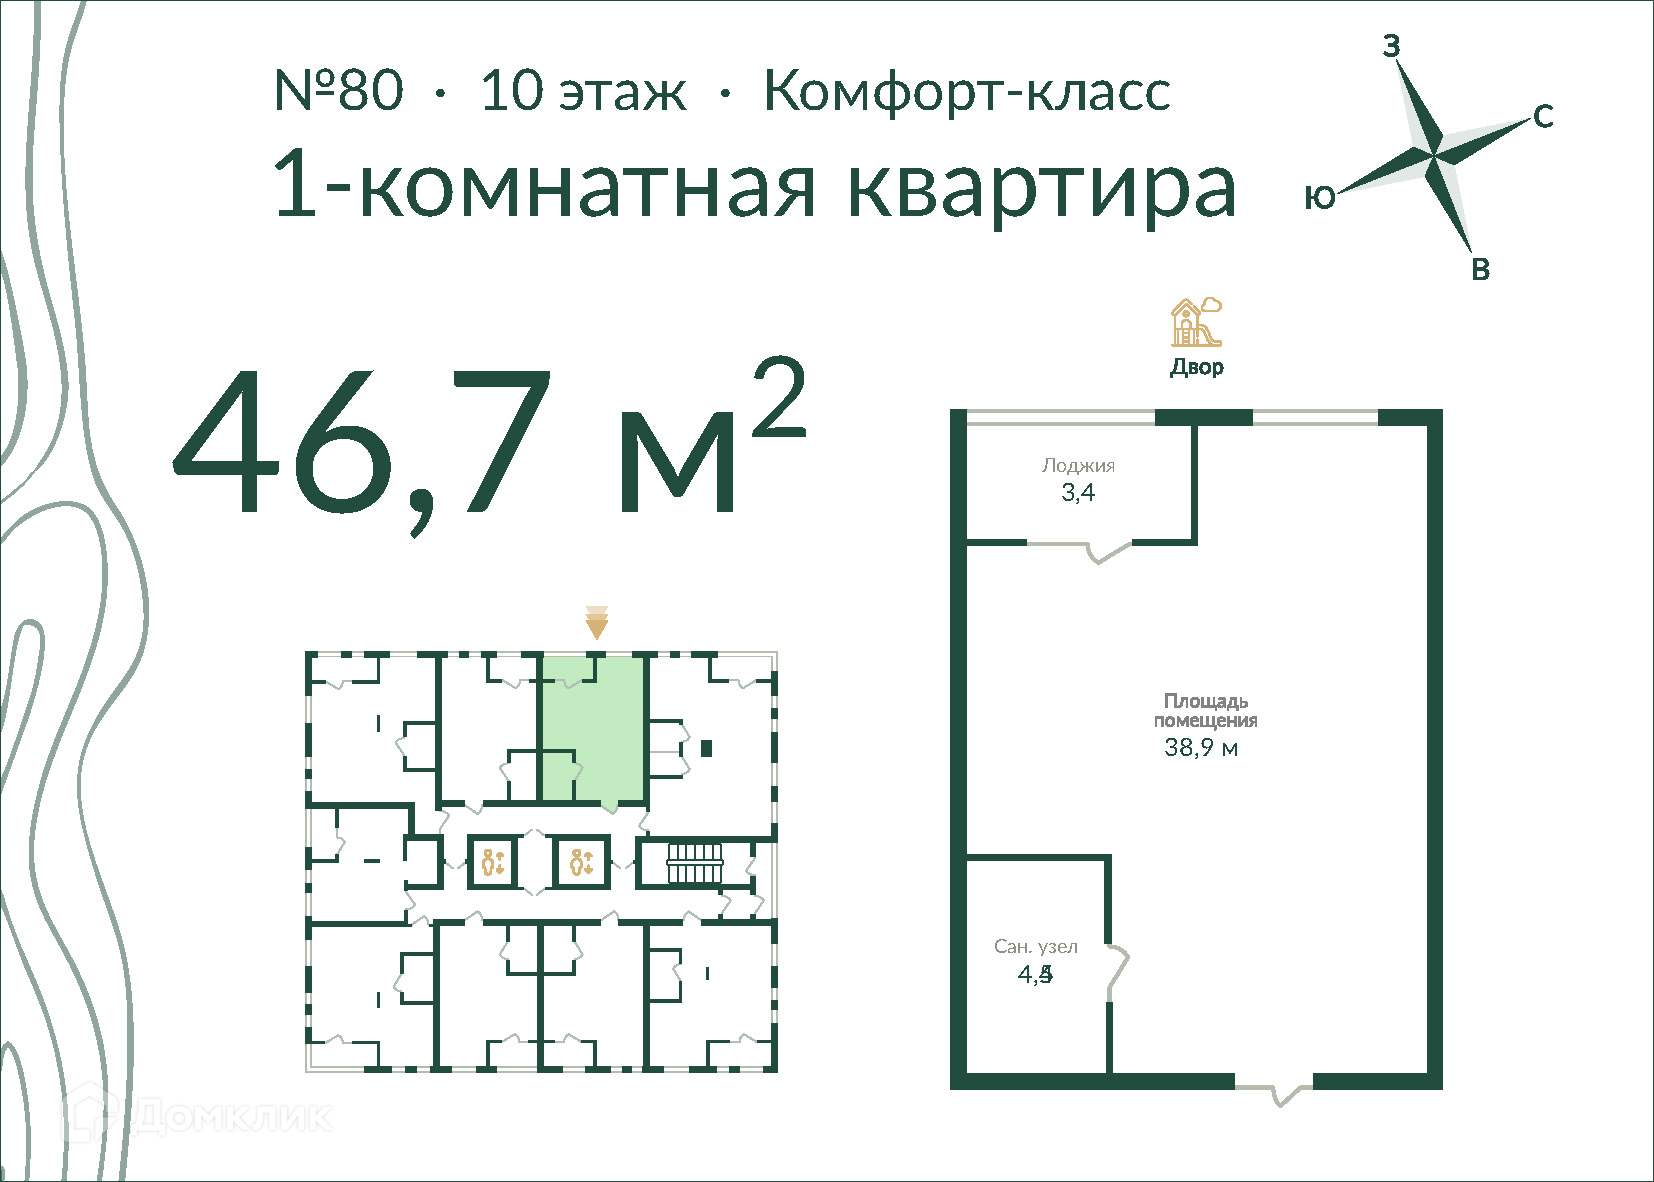 1-комнатная квартира 46м2 ЖК Экопарк